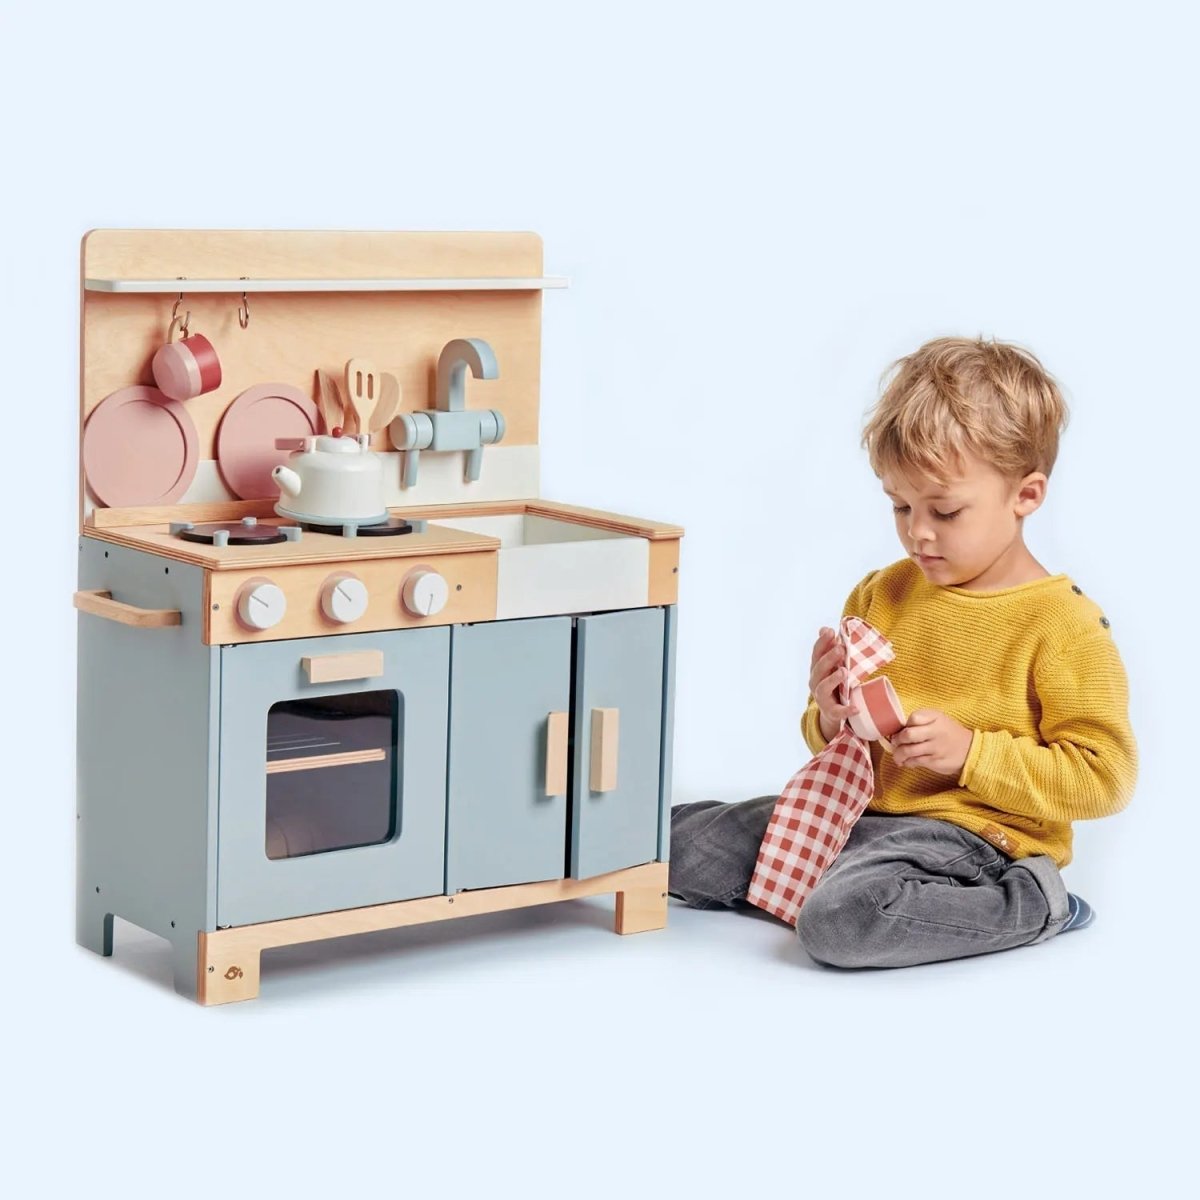 Wooden Pretend Home Kitchen - Zidar Kid